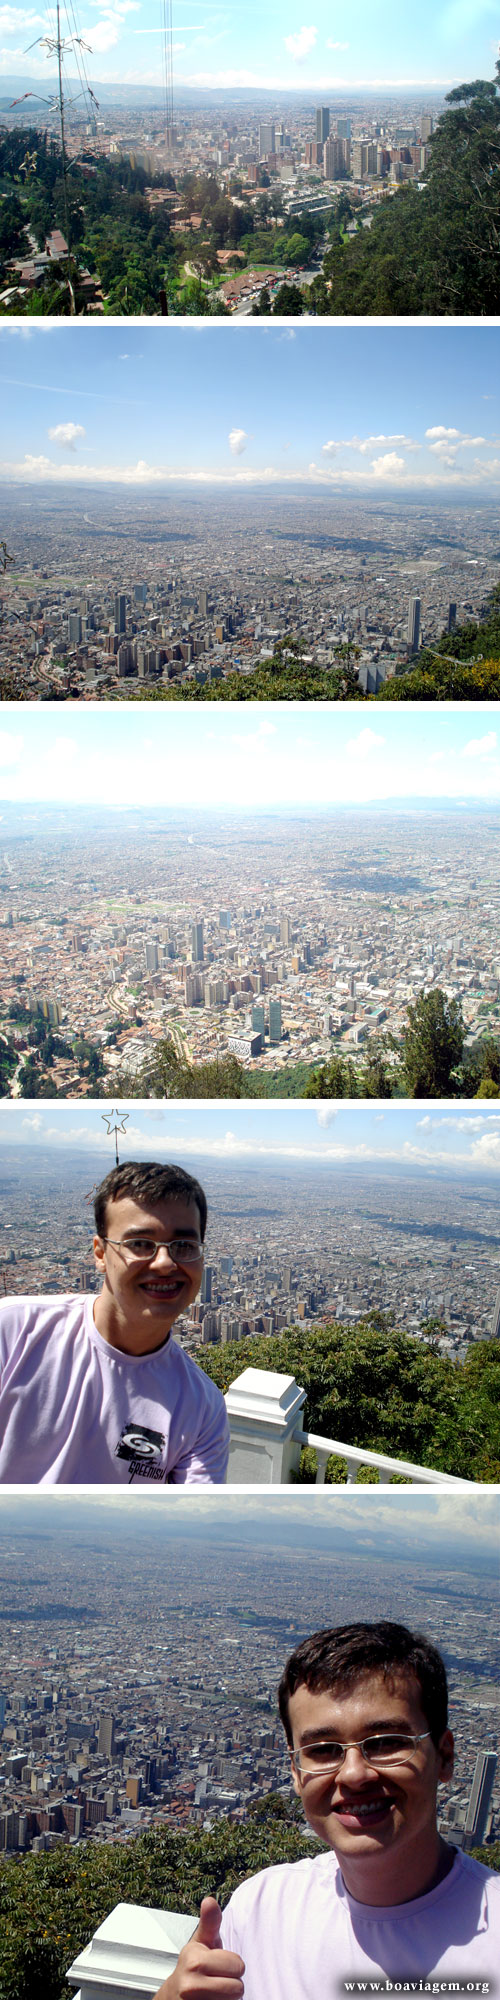 Vista panoramica de Bogotá no cume do Monserrate